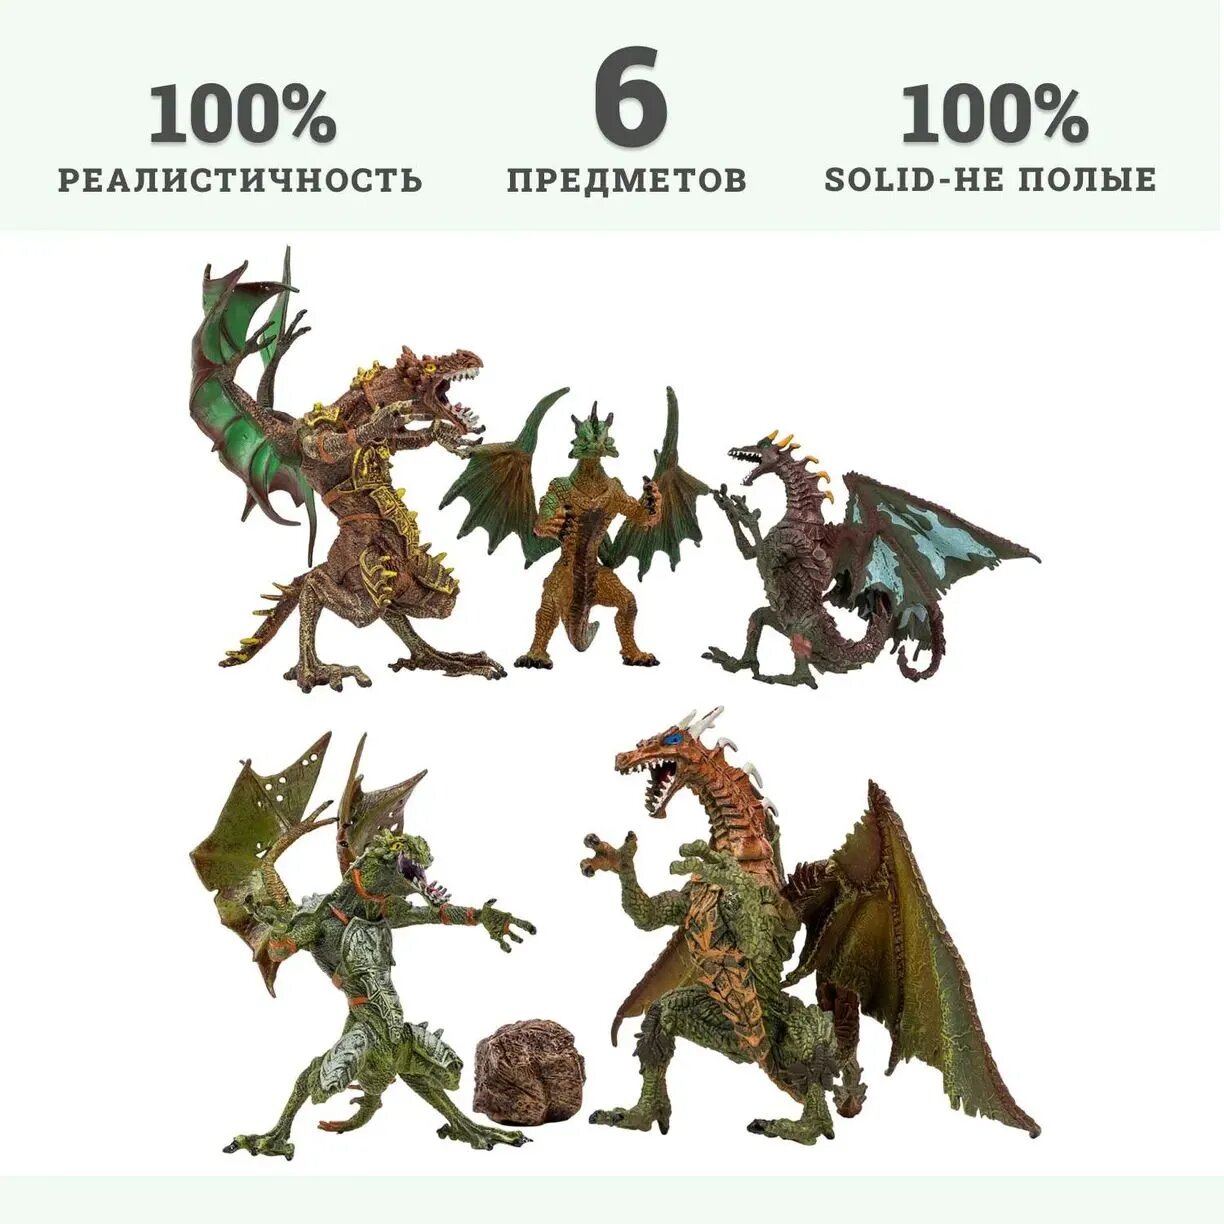 Драконы и динозавры для детей серии "Мир драконов" (5 драконов игрушек, 1 аксессуар в наборе с фигур